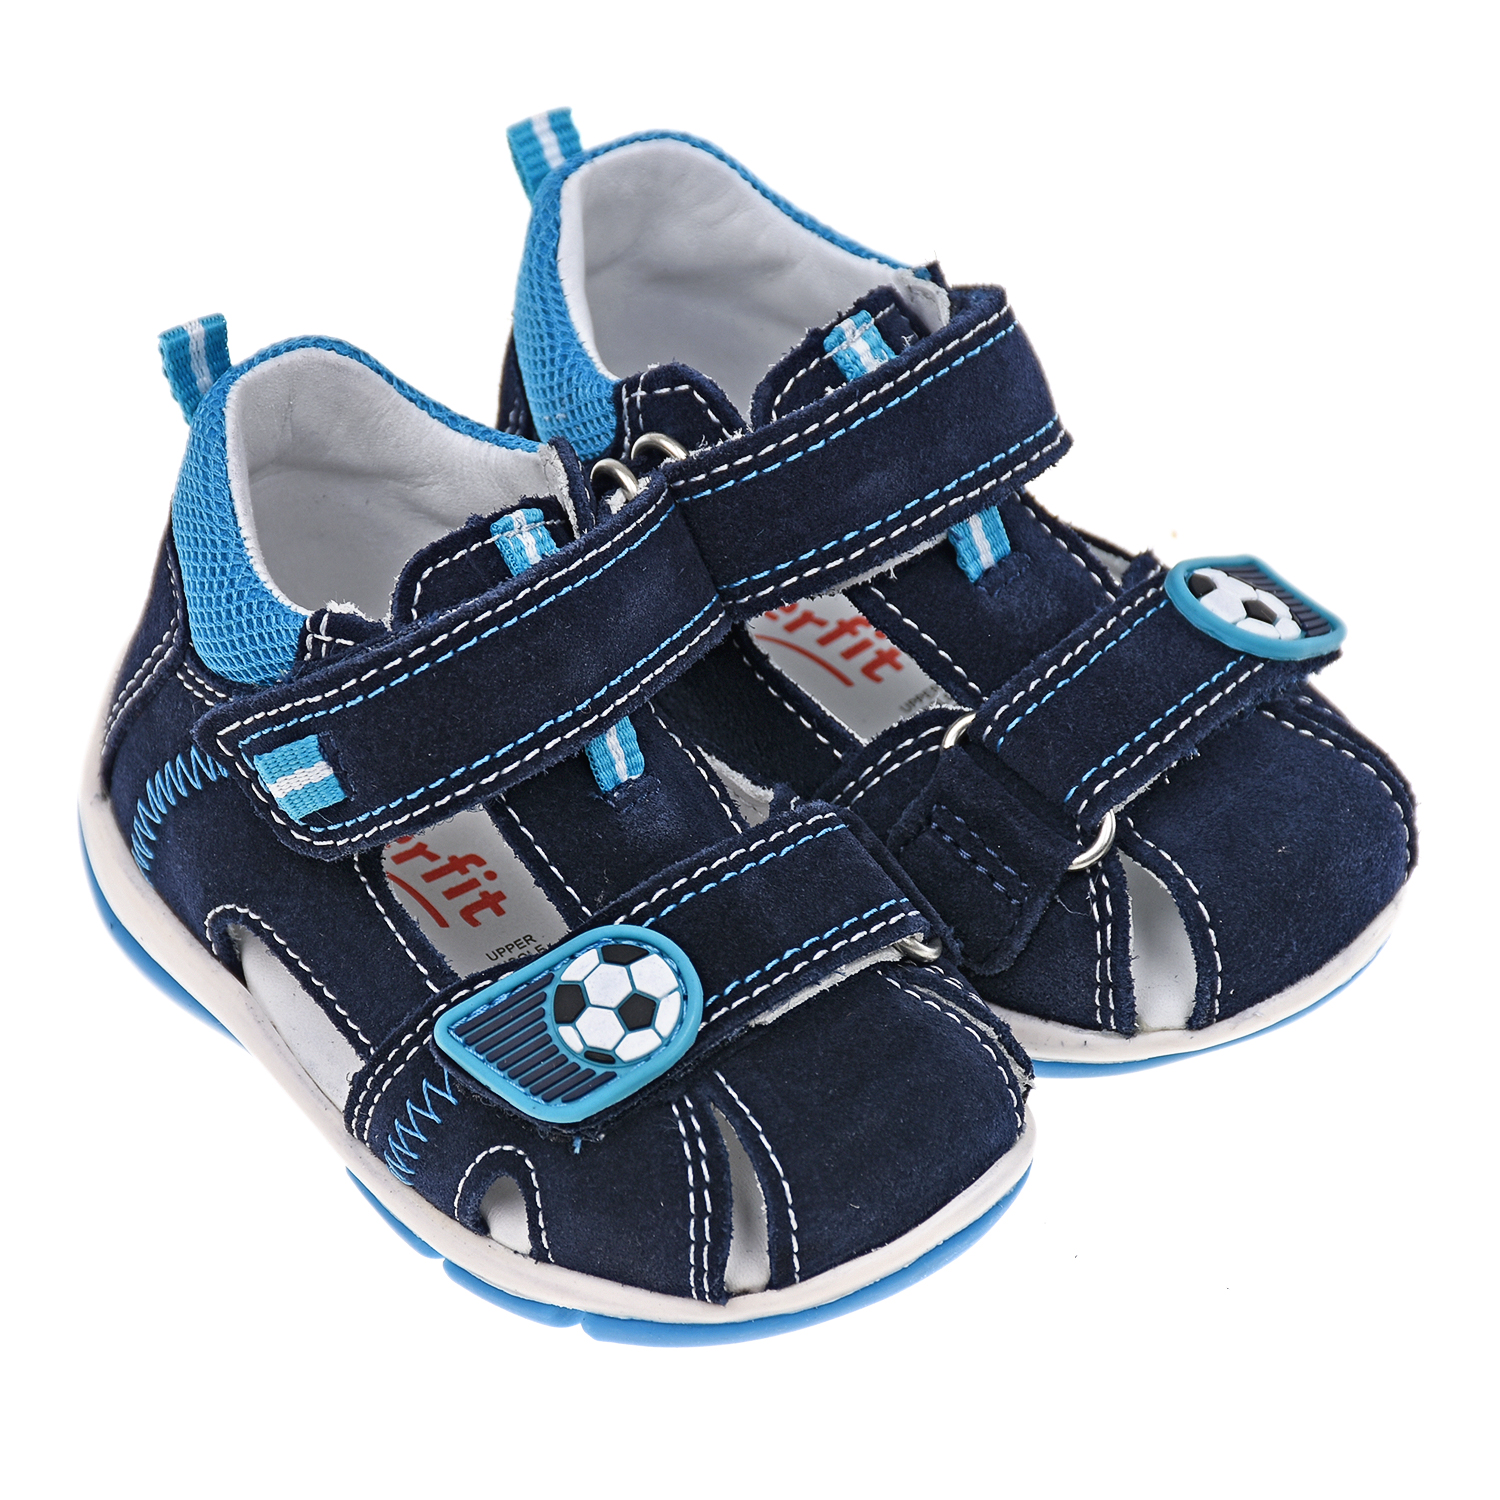 Кожаные сандалии с аппликацией "Футбольный мяч" SUPERFIT детские, размер 18, цвет синий - фото 1